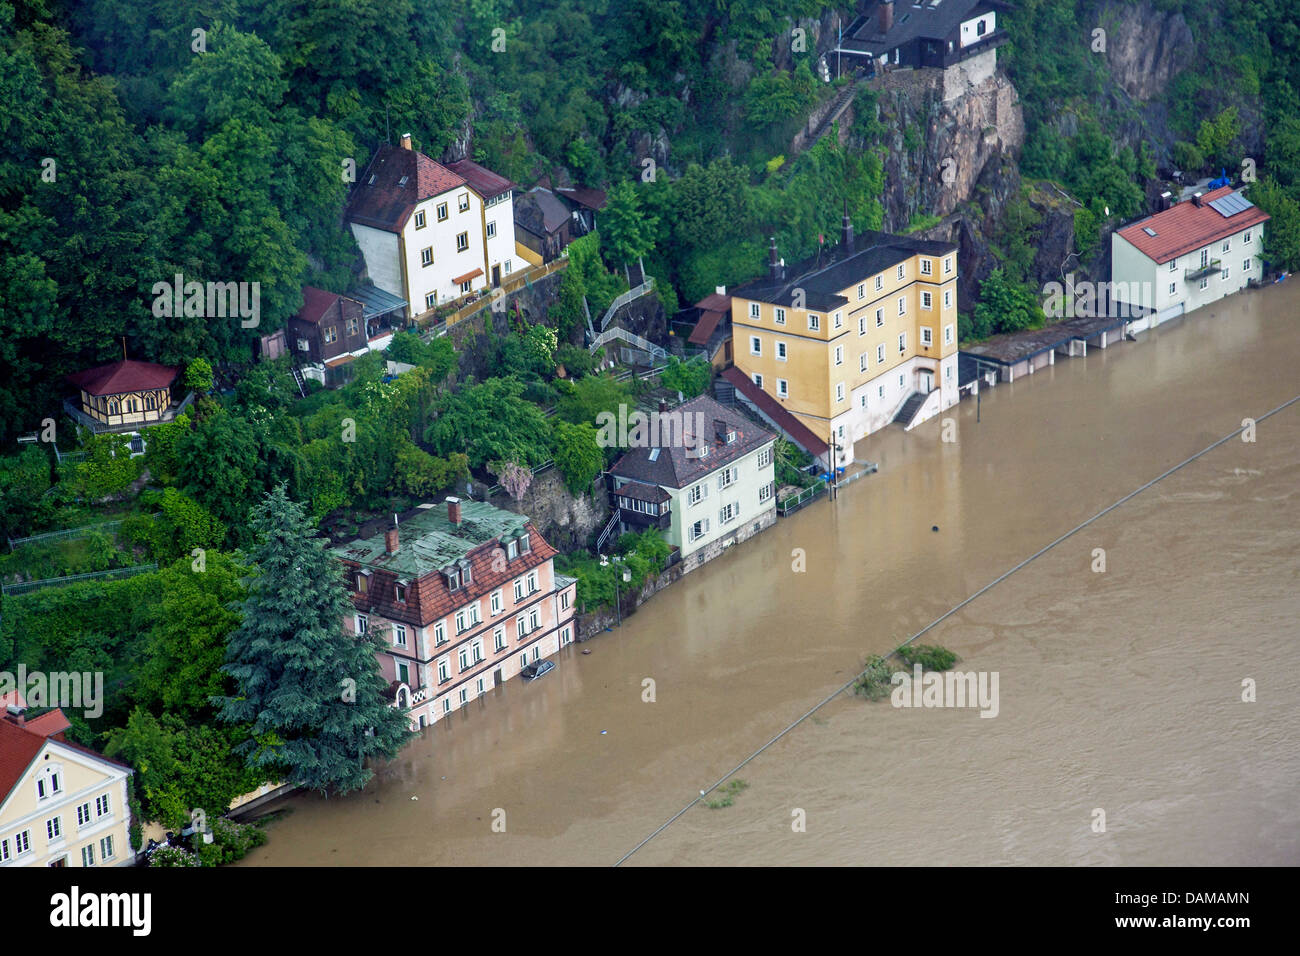 12 B rue du danube inondé en juin 2013, l'Allemagne, Bavière, Passau Banque D'Images